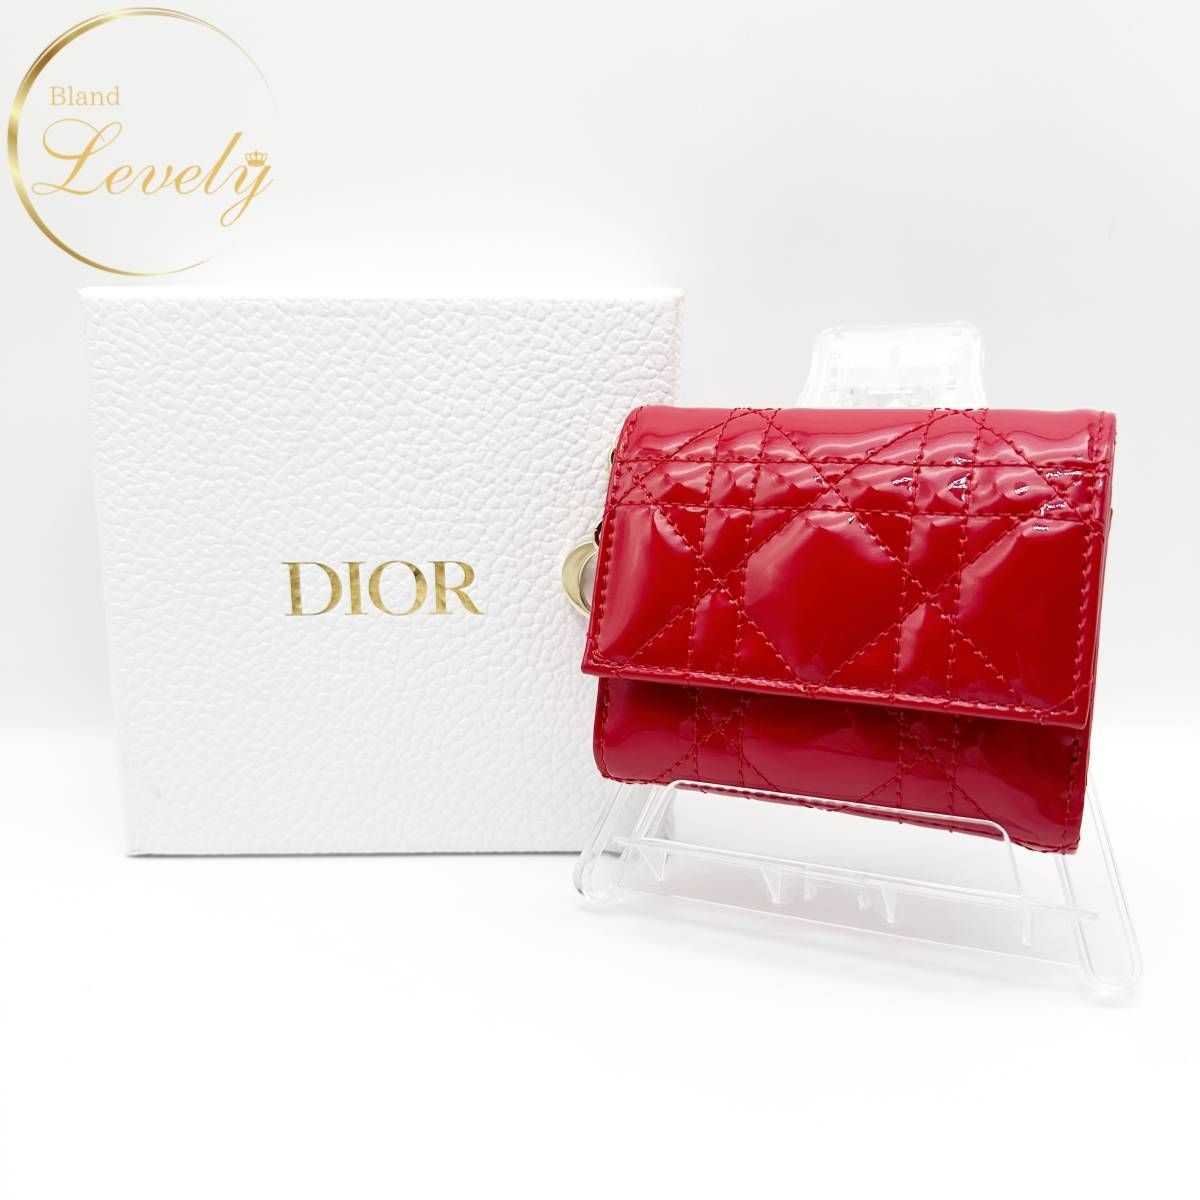 人気定番格安美品 Dior レディディオール カナージュ ロータスウォレット 三つ折り財布 小物